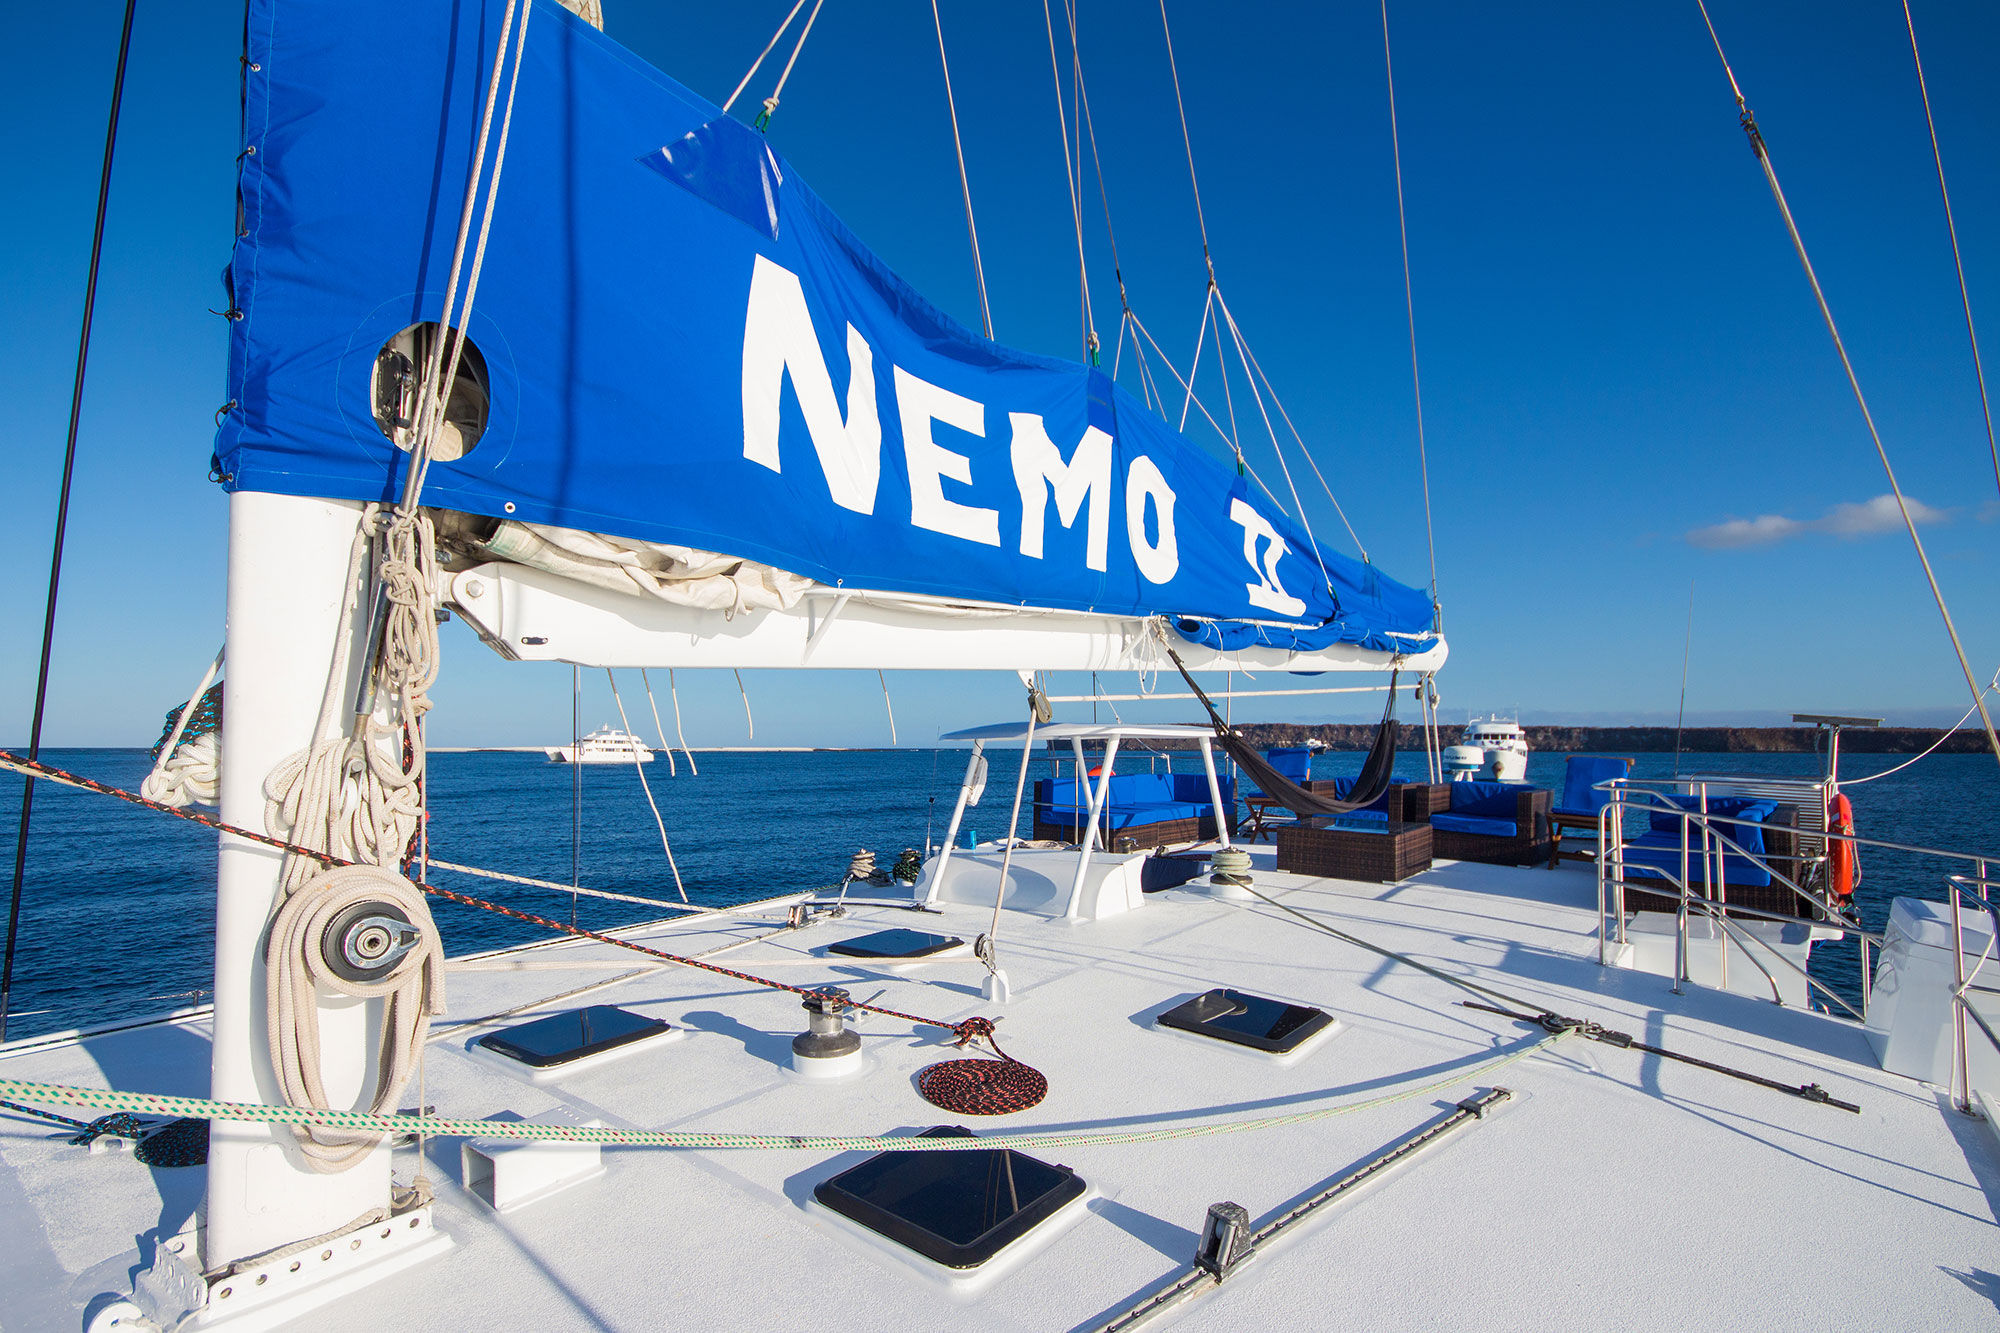 日光浴甲板 - Nemo II